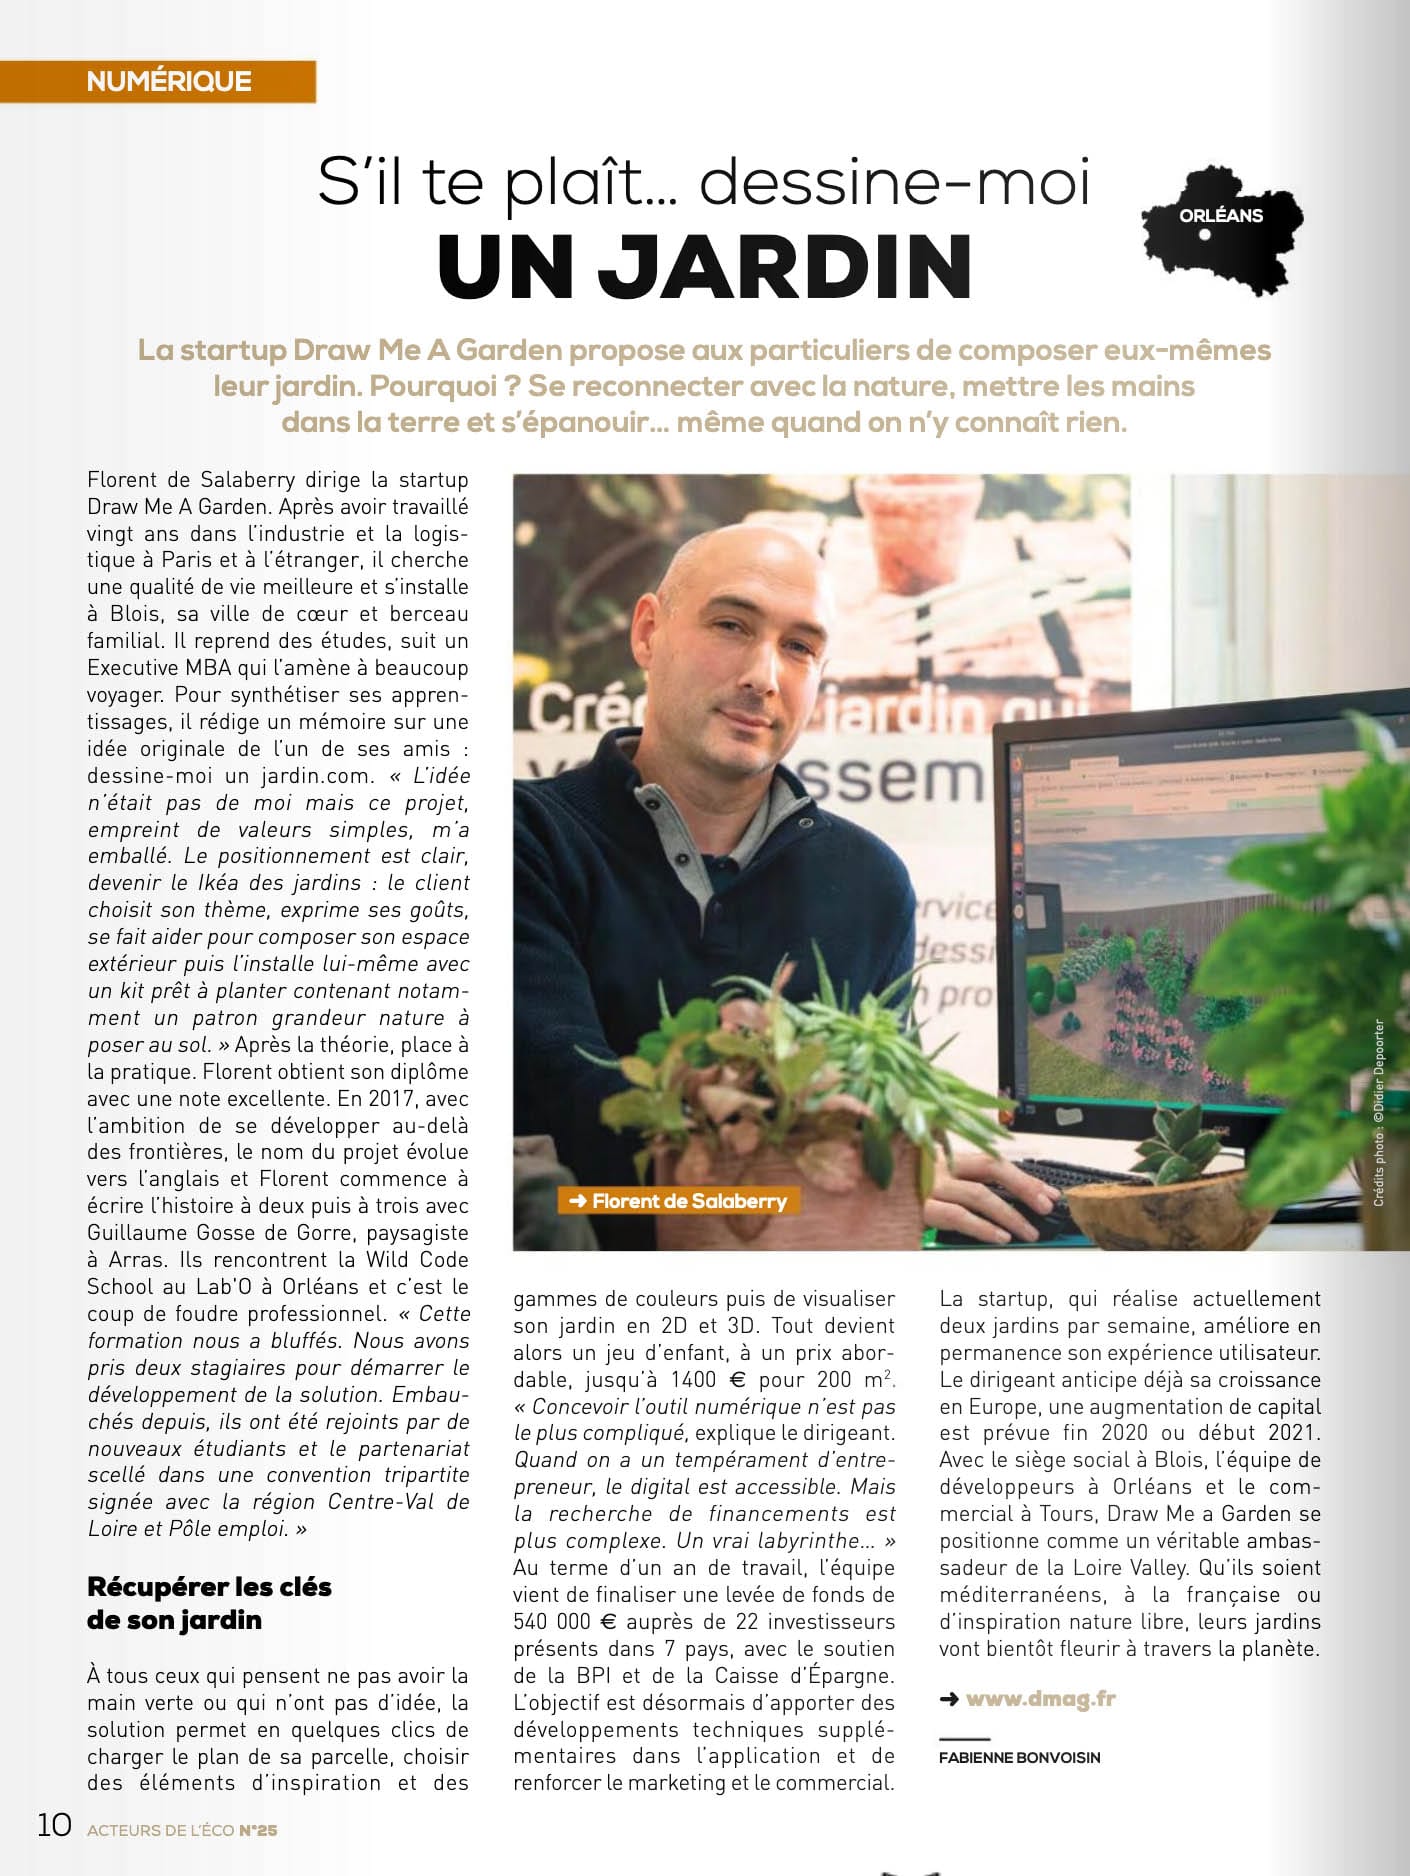 Article de presse sur Draw Me A Garden publié dans le magazine Acteurs de l'éco.